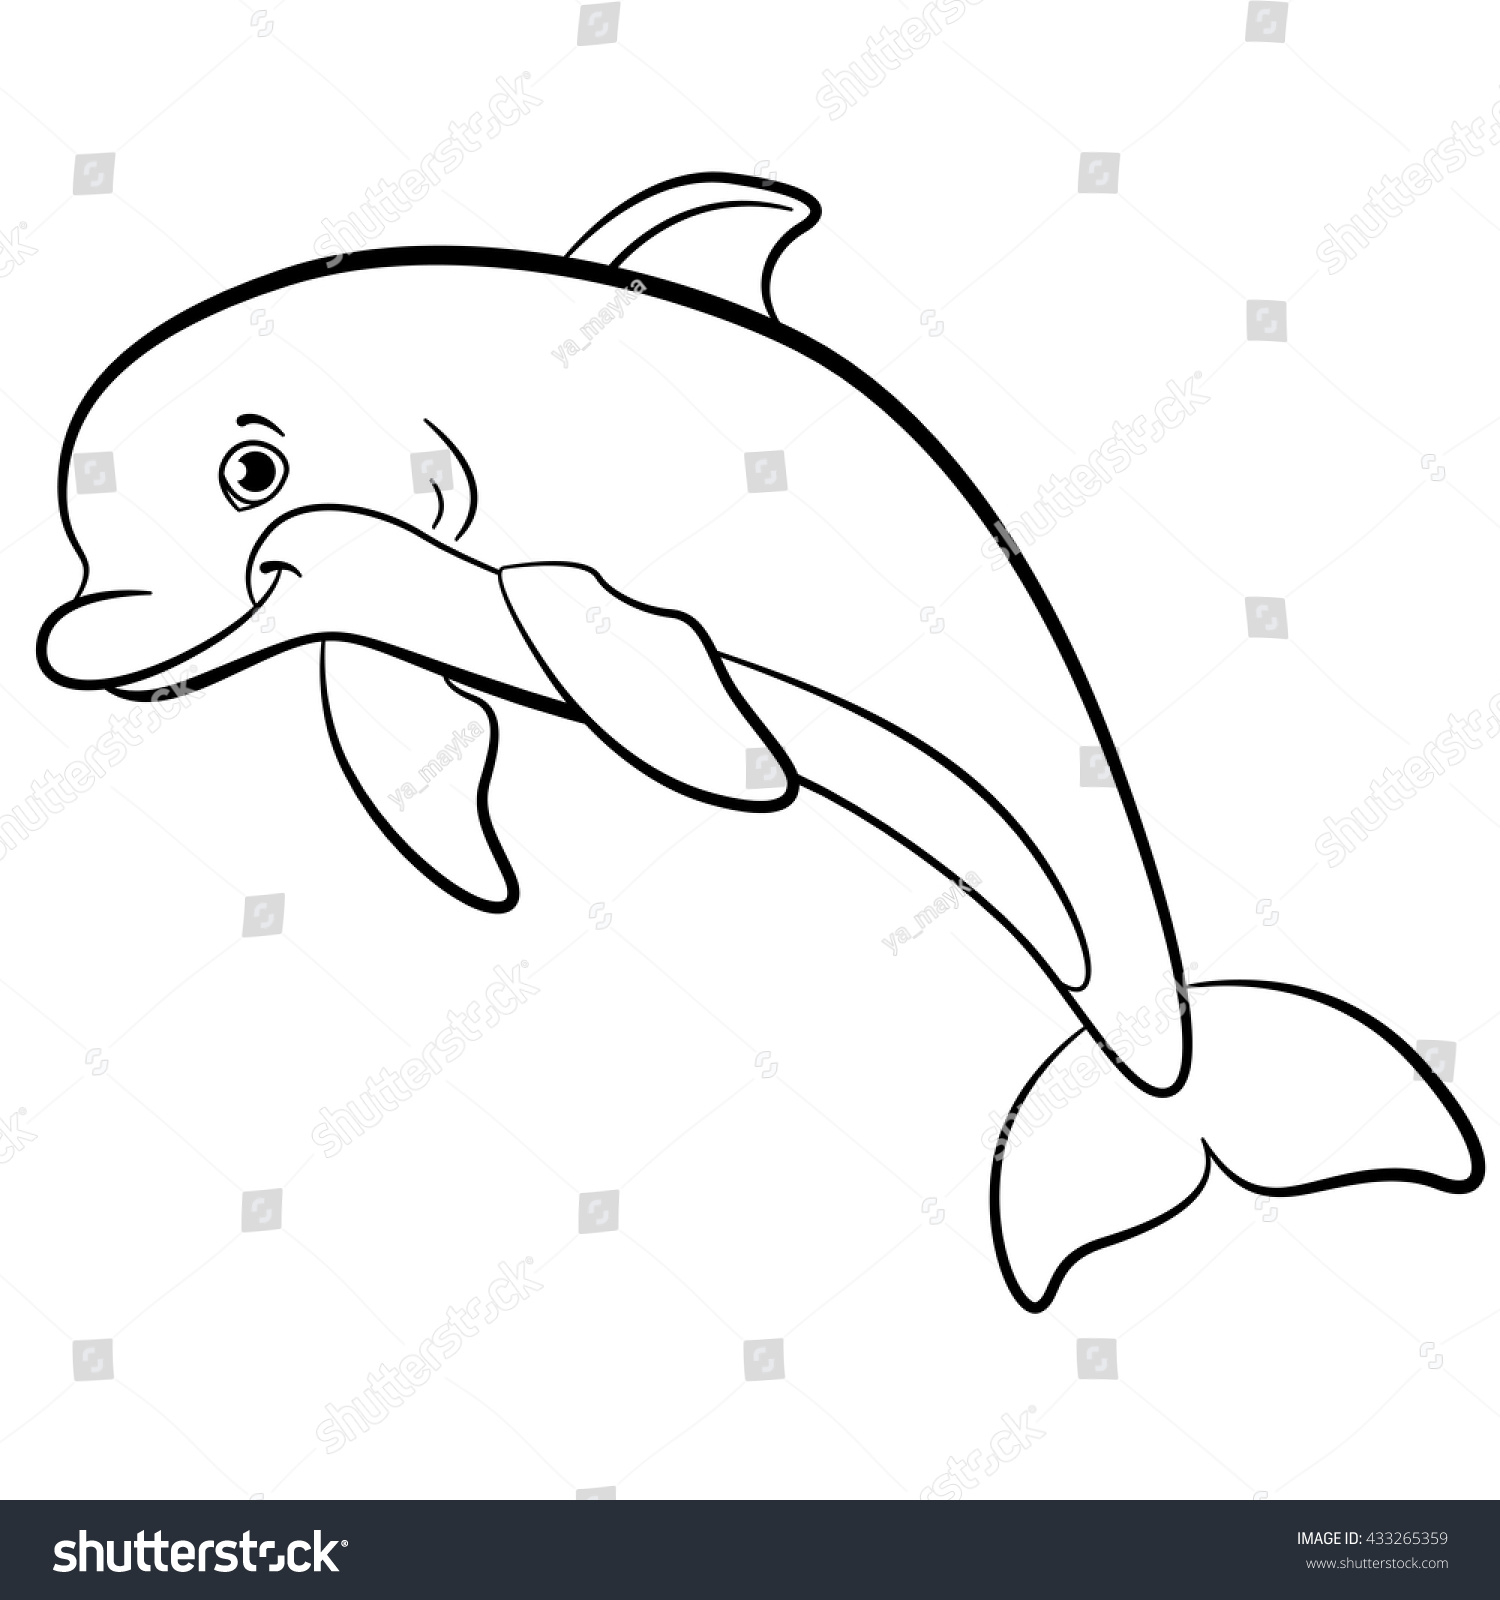 Дельфин картинка для детей черно белая